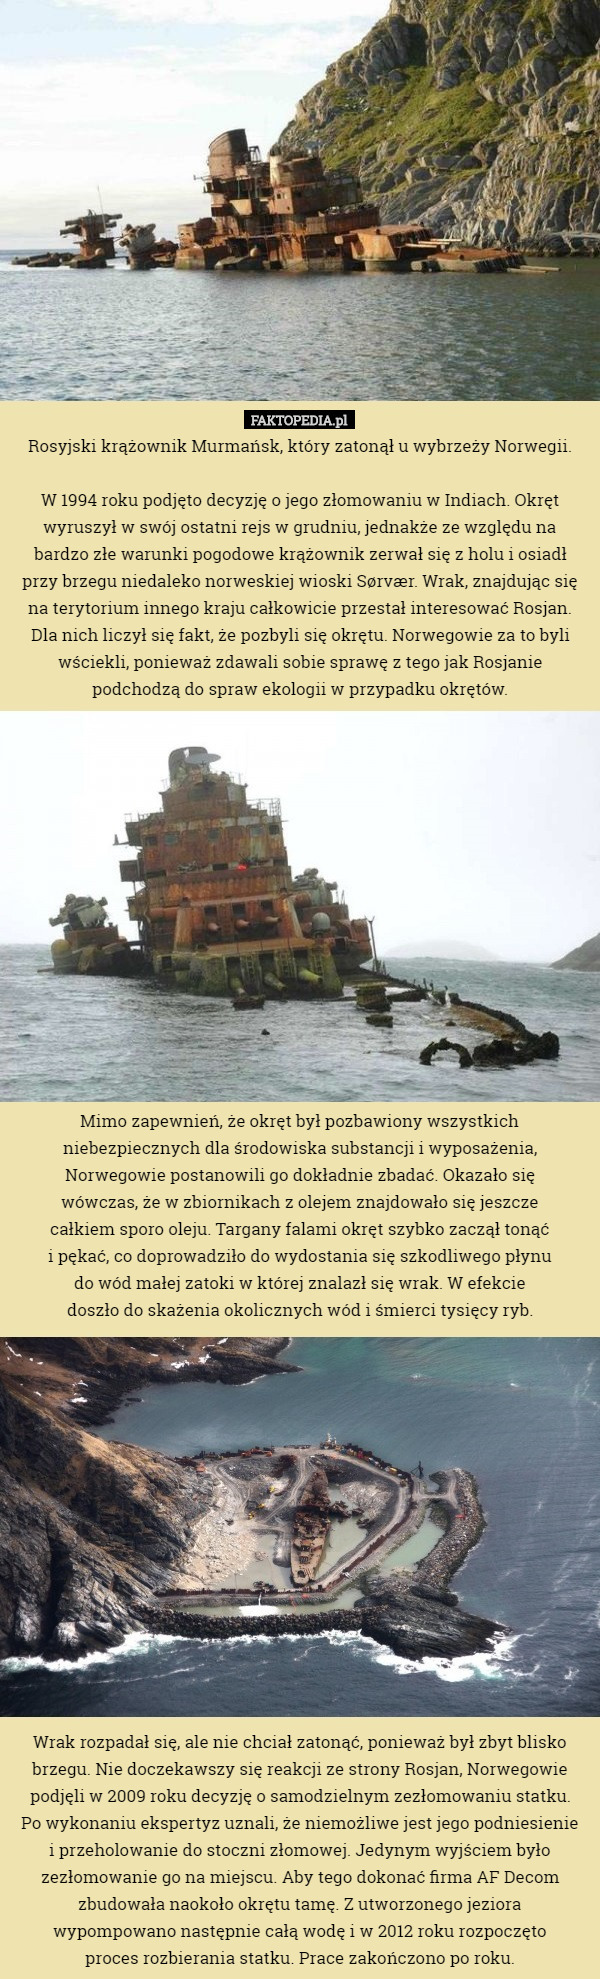 Rosyjski krążownik Murmańsk, który zatonął u wybrzeży Norwegii.

 W 1994 roku podjęto decyzję o jego złomowaniu w Indiach. Okręt wyruszył w swój ostatni rejs w grudniu, jednakże ze względu na
 bardzo złe warunki pogodowe krążownik zerwał się z holu i osiadł
 przy brzegu niedaleko norweskiej wioski Sørvær. Wrak, znajdując się na terytorium innego kraju całkowicie przestał interesować Rosjan. Dla nich liczył się fakt, że pozbyli się okrętu. Norwegowie za to byli wściekli, ponieważ zdawali sobie sprawę z tego jak Rosjanie podchodzą do spraw ekologii w przypadku okrętów.















 Mimo zapewnień, że okręt był pozbawiony wszystkich niebezpiecznych dla środowiska substancji i wyposażenia, Norwegowie postanowili go dokładnie zbadać. Okazało się
 wówczas, że w zbiornikach z olejem znajdowało się jeszcze
 całkiem sporo oleju. Targany falami okręt szybko zaczął tonąć
 i pękać, co doprowadziło do wydostania się szkodliwego płynu
 do wód małej zatoki w której znalazł się wrak. W efekcie
 doszło do skażenia okolicznych wód i śmierci tysięcy ryb.















 Wrak rozpadał się, ale nie chciał zatonąć, ponieważ był zbyt blisko brzegu. Nie doczekawszy się reakcji ze strony Rosjan, Norwegowie podjęli w 2009 roku decyzję o samodzielnym zezłomowaniu statku.
 Po wykonaniu ekspertyz uznali, że niemożliwe jest jego podniesienie
 i przeholowanie do stoczni złomowej. Jedynym wyjściem było zezłomowanie go na miejscu. Aby tego dokonać firma AF Decom zbudowała naokoło okrętu tamę. Z utworzonego jeziora
 wypompowano następnie całą wodę i w 2012 roku rozpoczęto
 proces rozbierania statku. Prace zakończono po roku. 